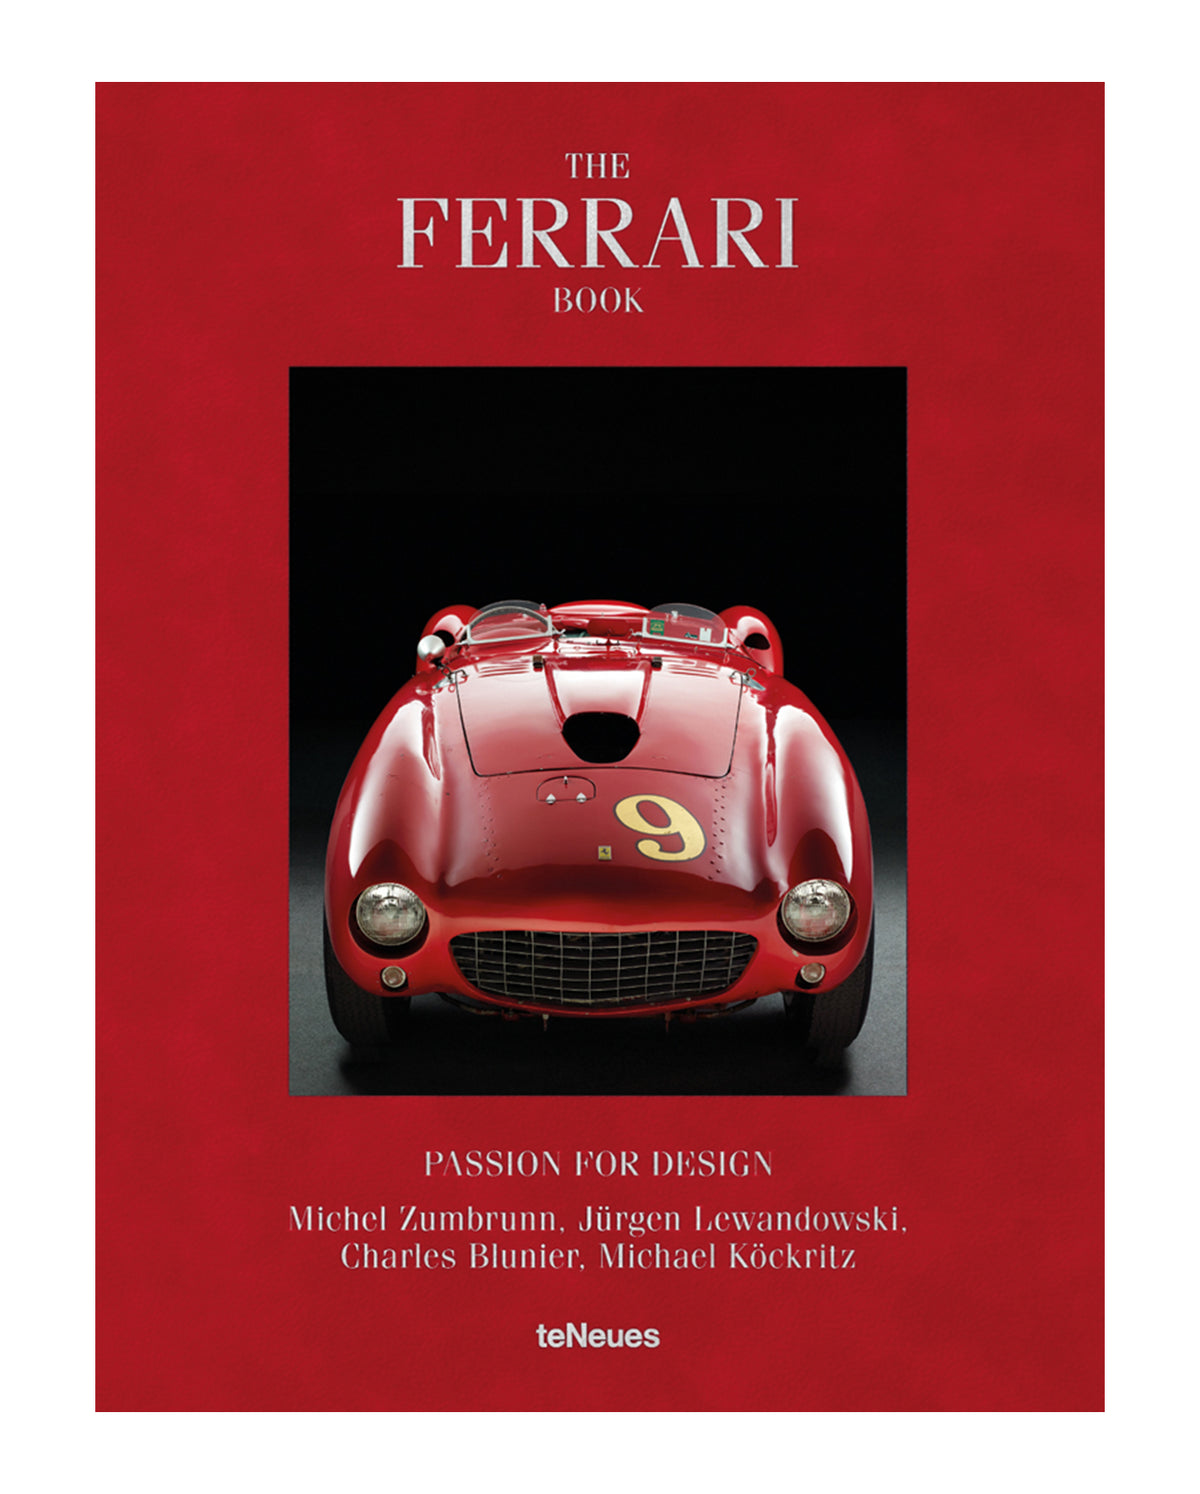 The Ferrari Book: Passion For Design